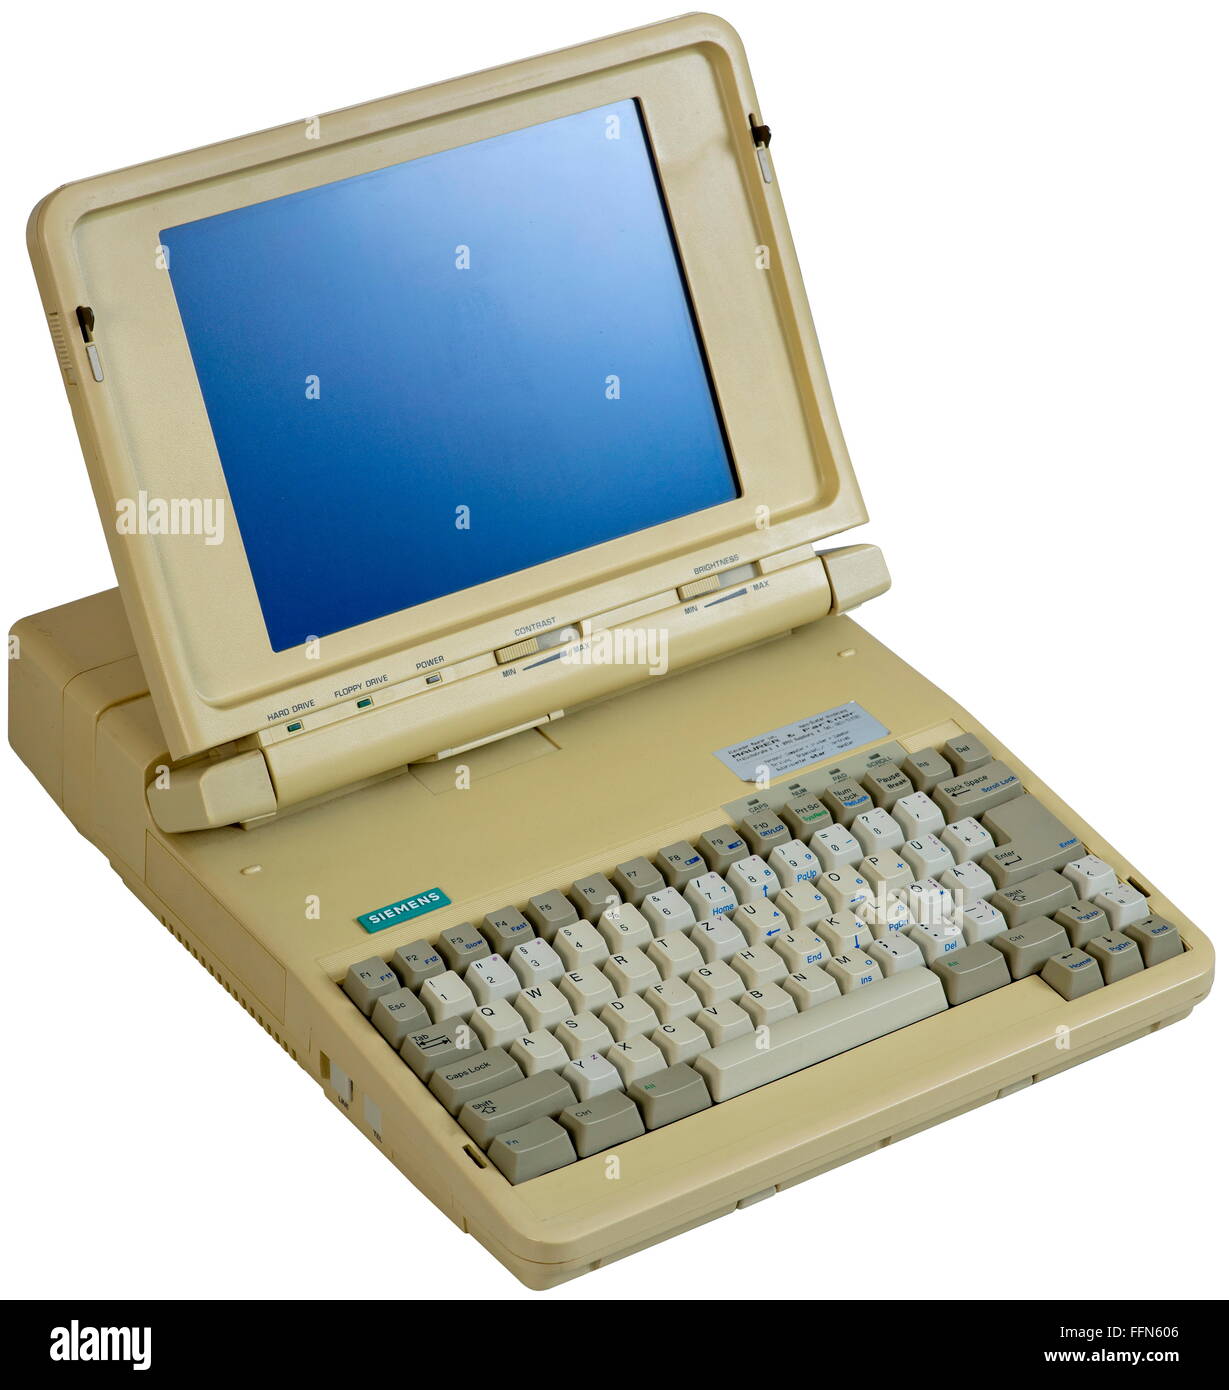 Computer / elettronica, computer, Siemens versione laptop PCD-2P, primo  computer portatile con display LCD, schermo diagonale 26 centimetri,  monocromatico, unità floppy disk integrata da 3.5 pollici, unità floppy,  unità disco rigido da